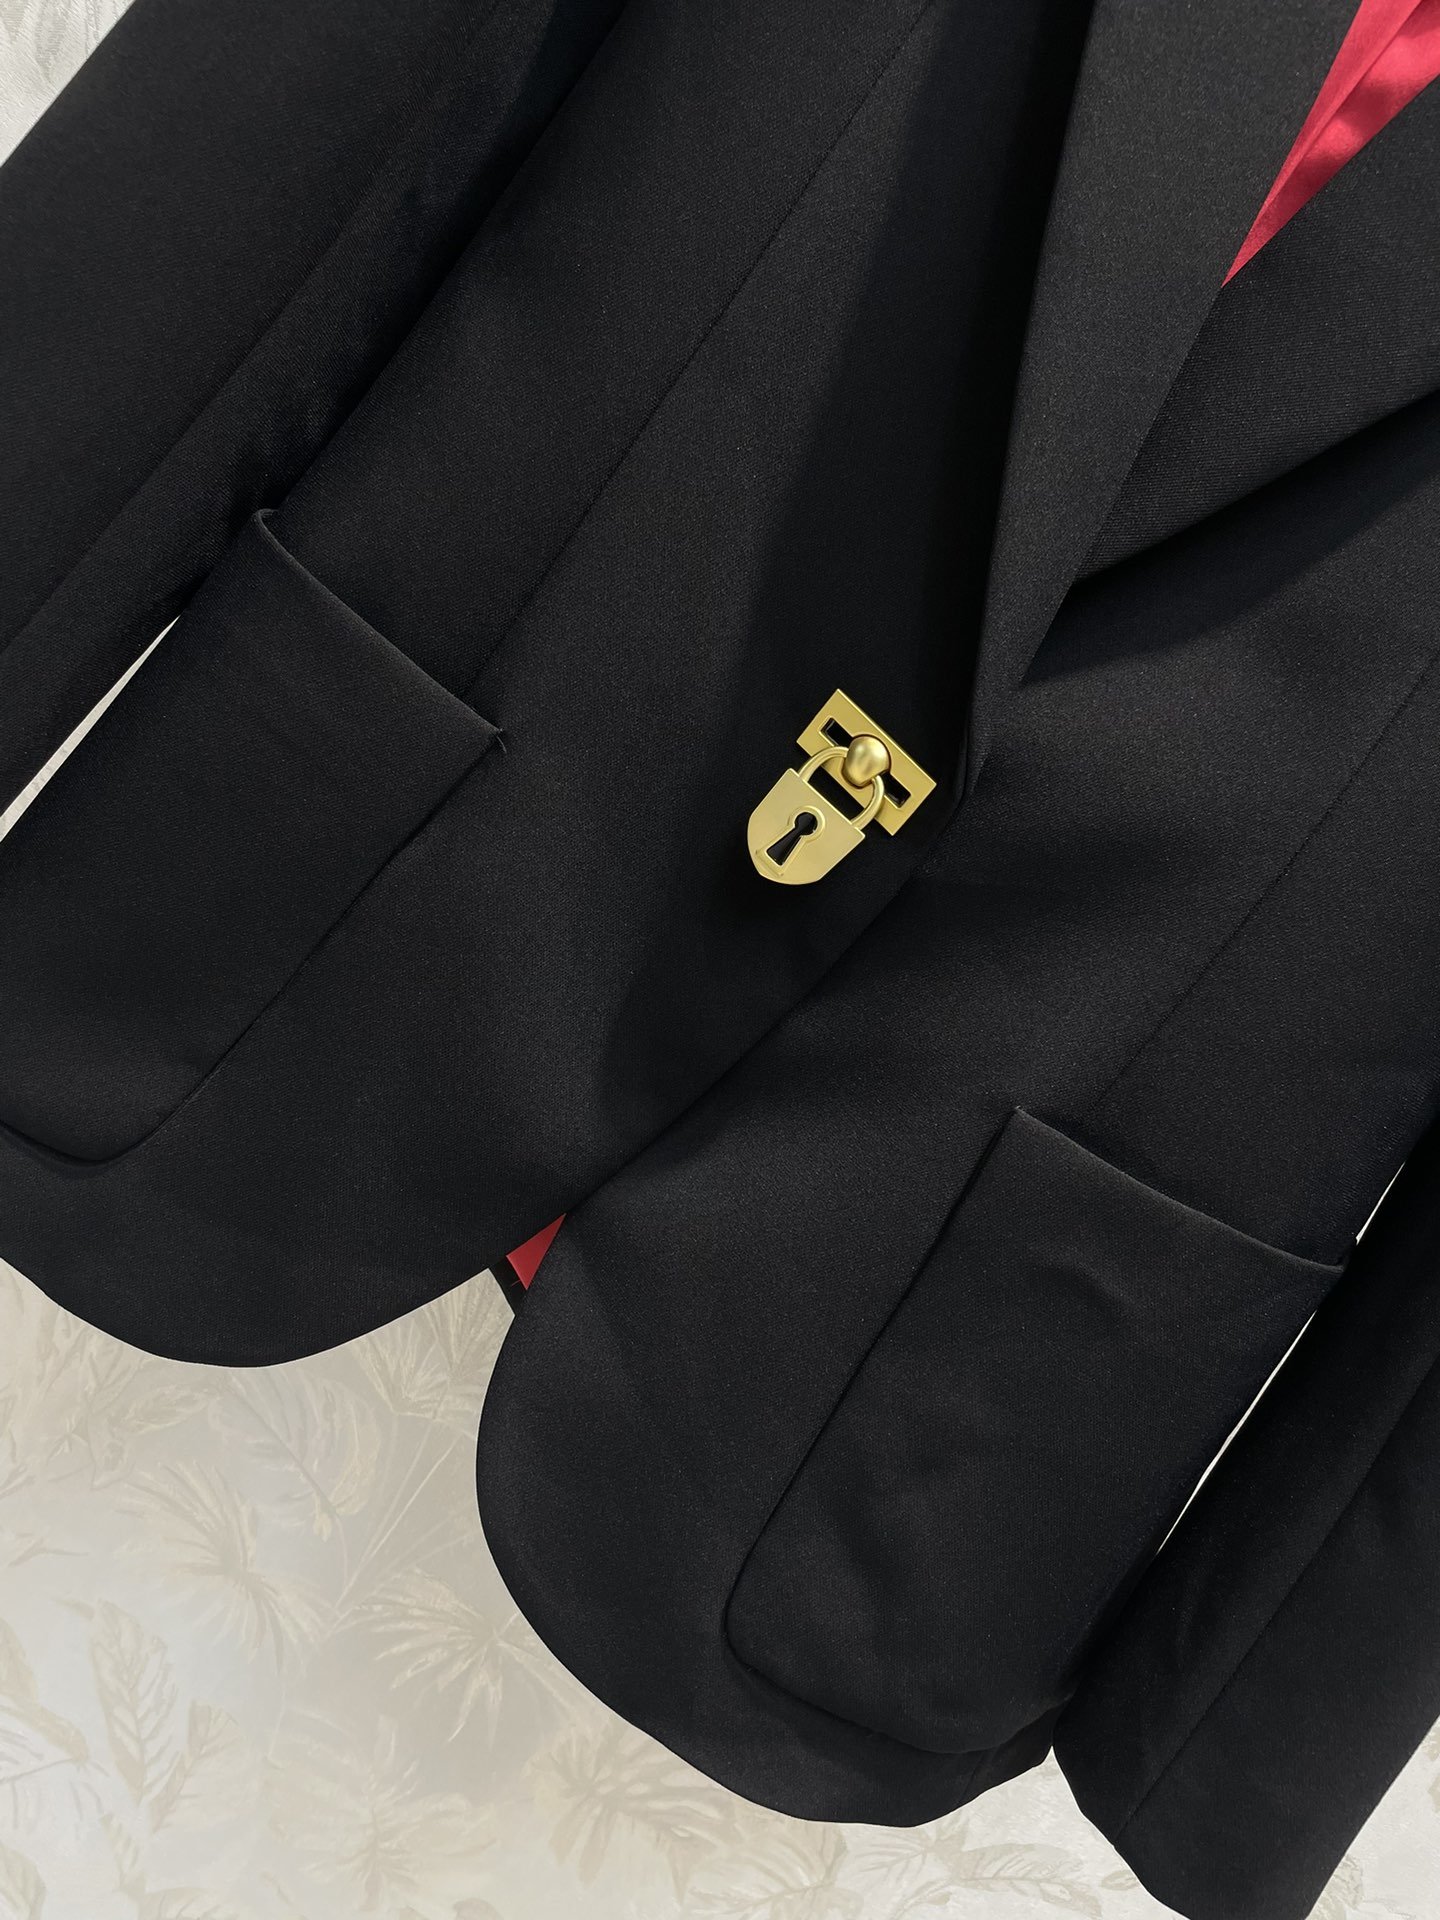 Schiaparelli23SS春夏新款金锁扣西装外套百搭大气充满时髦腔调感立体廓形的西装版型剪裁金锁扣